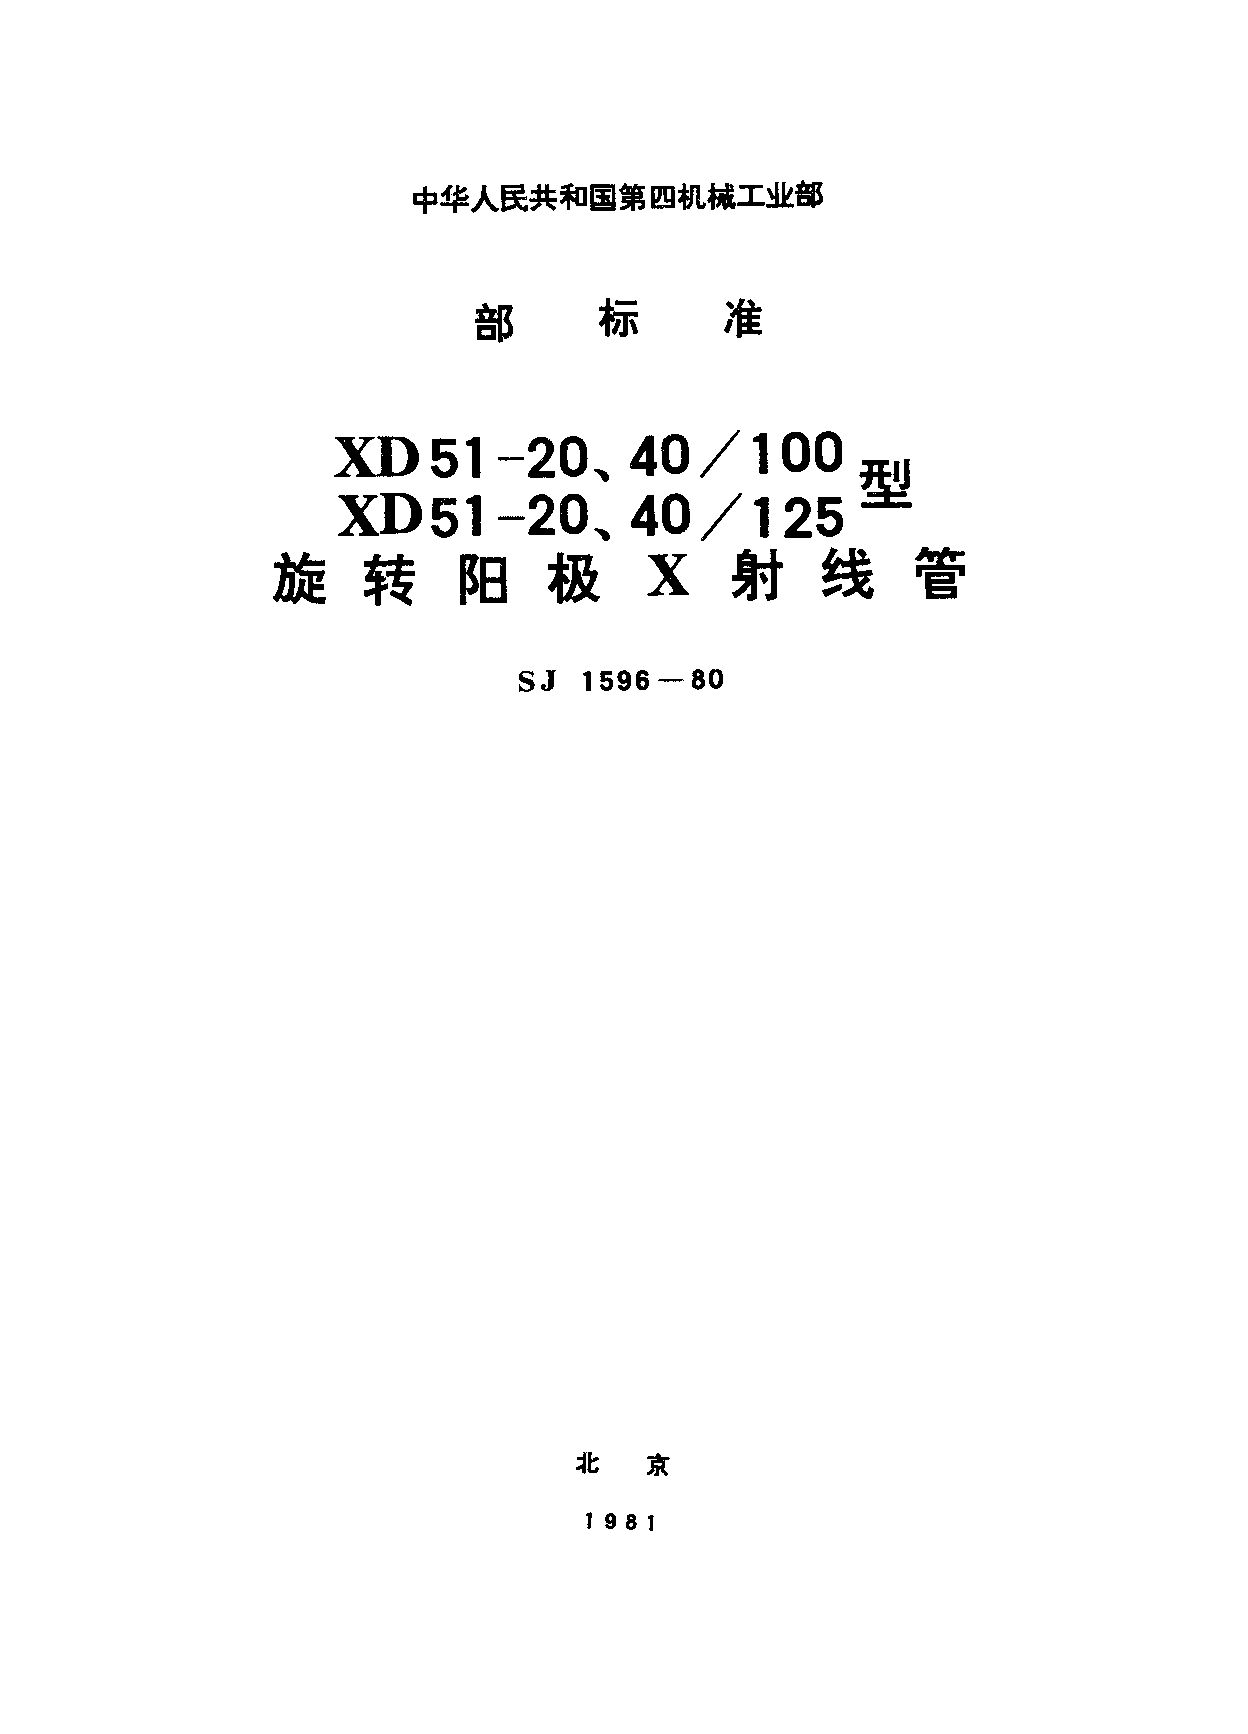 SJ 1596-1980封面图